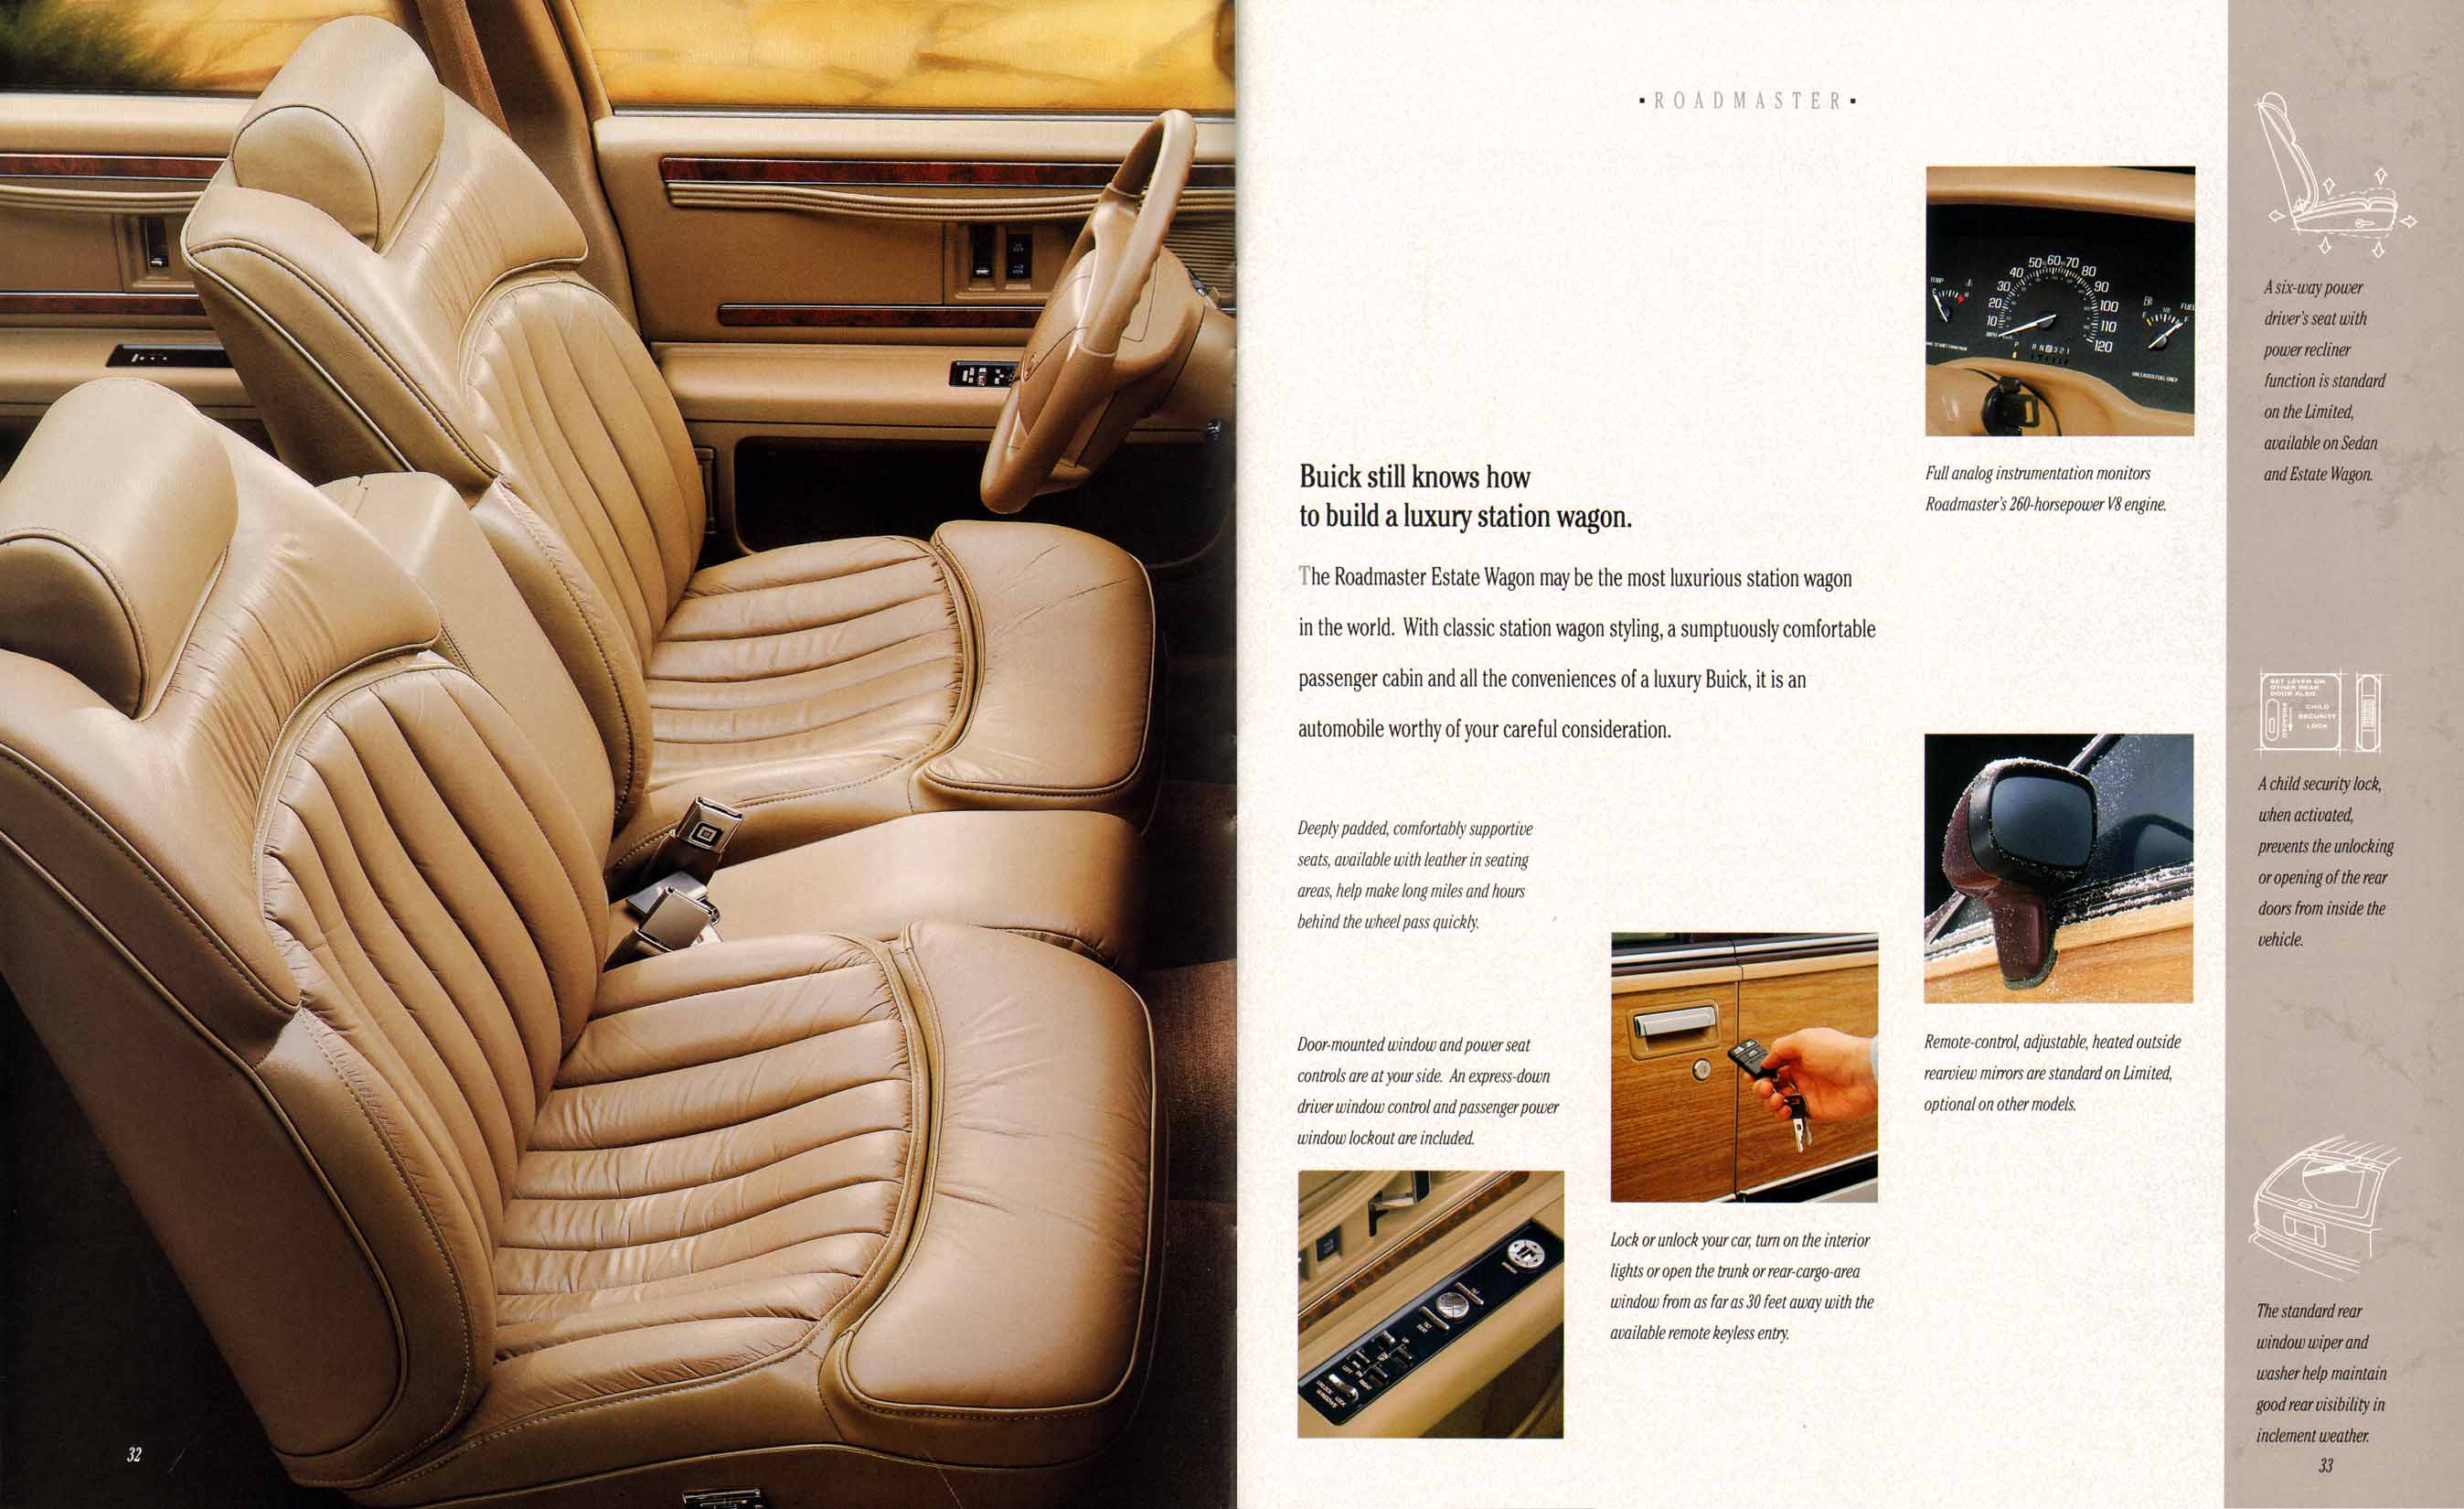 1994 Buick Full Line Prestige-34-35